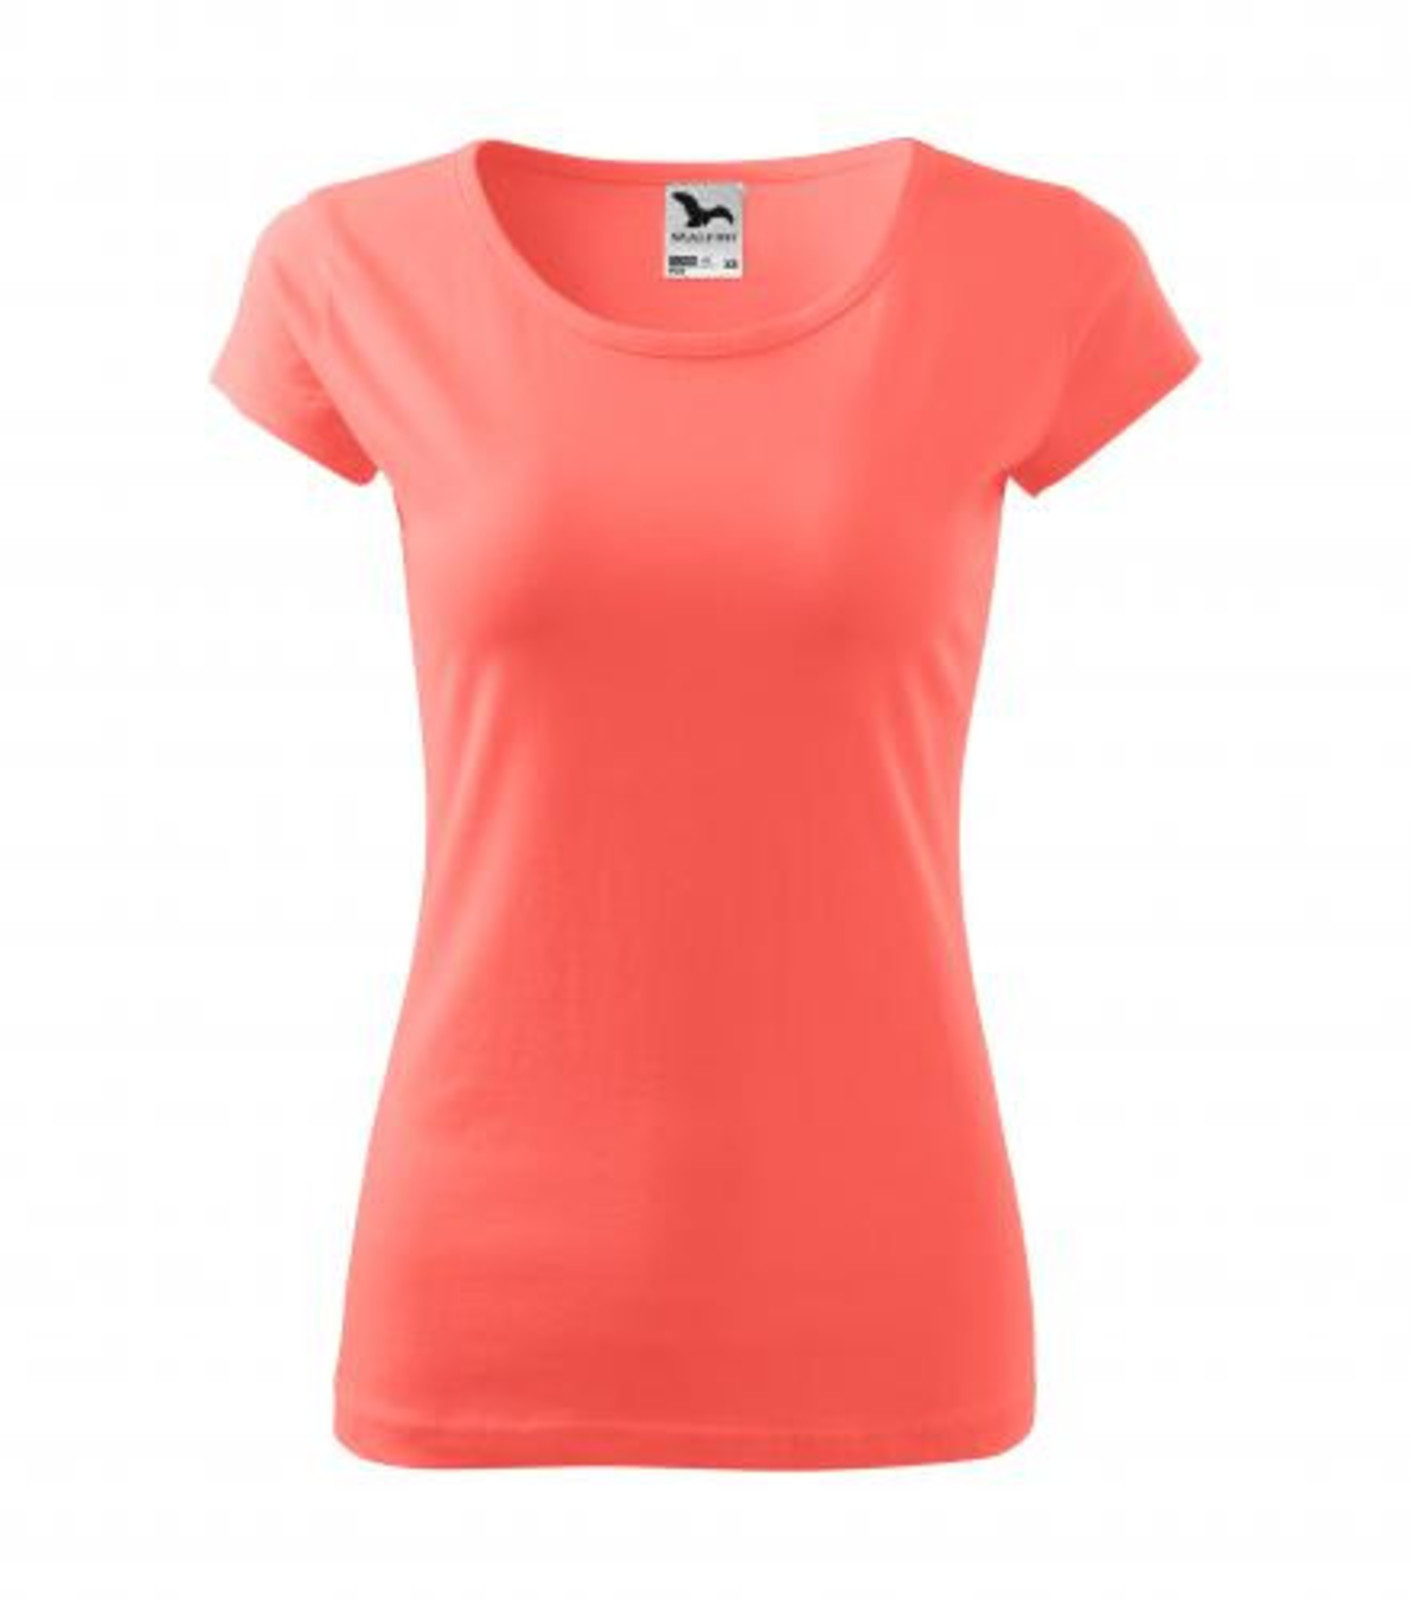 Dámske bavlnené tričko Malfini Pure 122 - veľkosť: S, farba: koralová